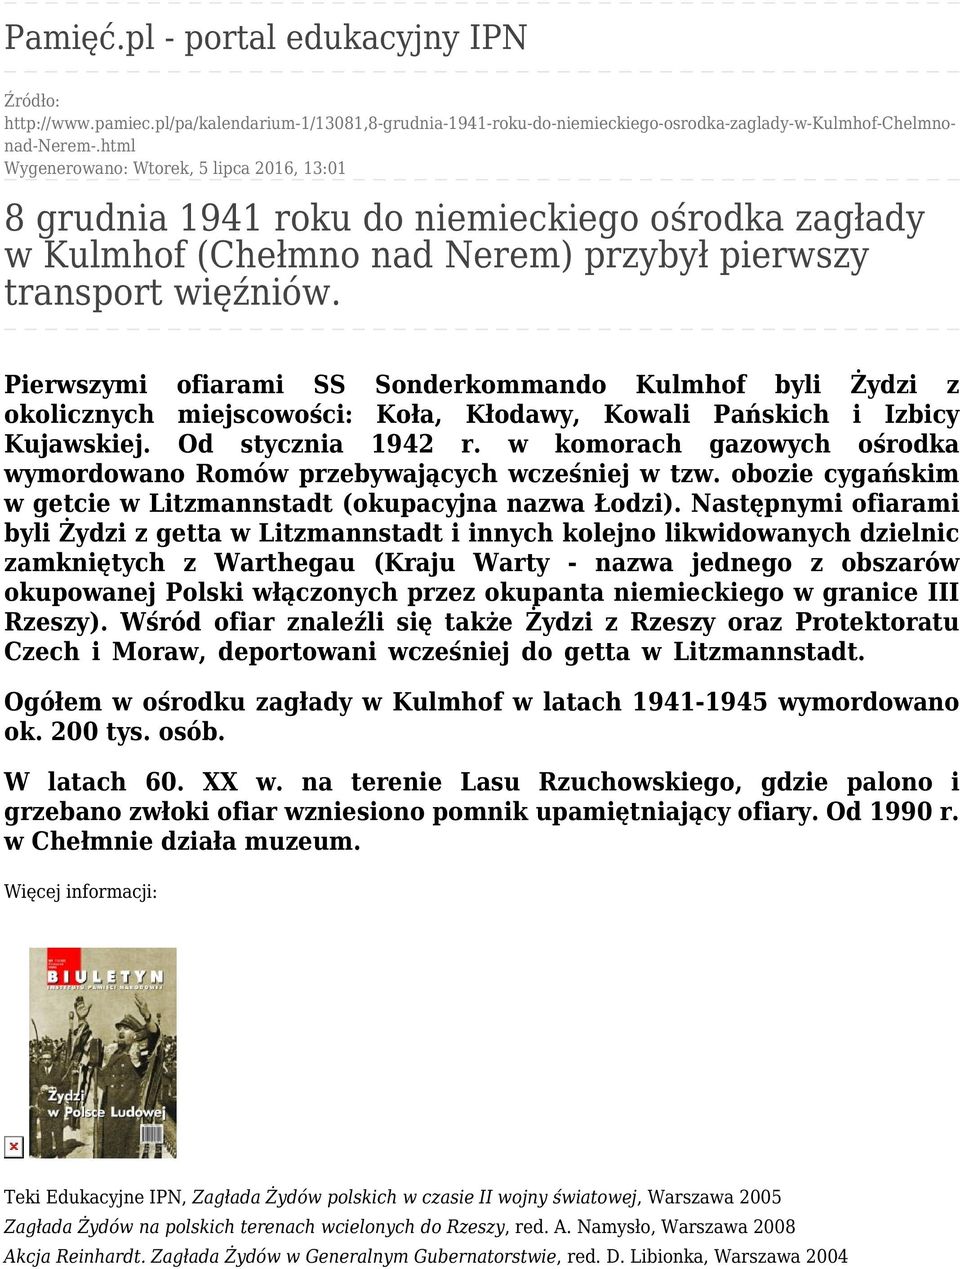 Pierwszymi ofiarami SS Sonderkommando Kulmhof byli Żydzi z okolicznych miejscowości: Koła, Kłodawy, Kowali Pańskich i Izbicy Kujawskiej. Od stycznia 1942 r.